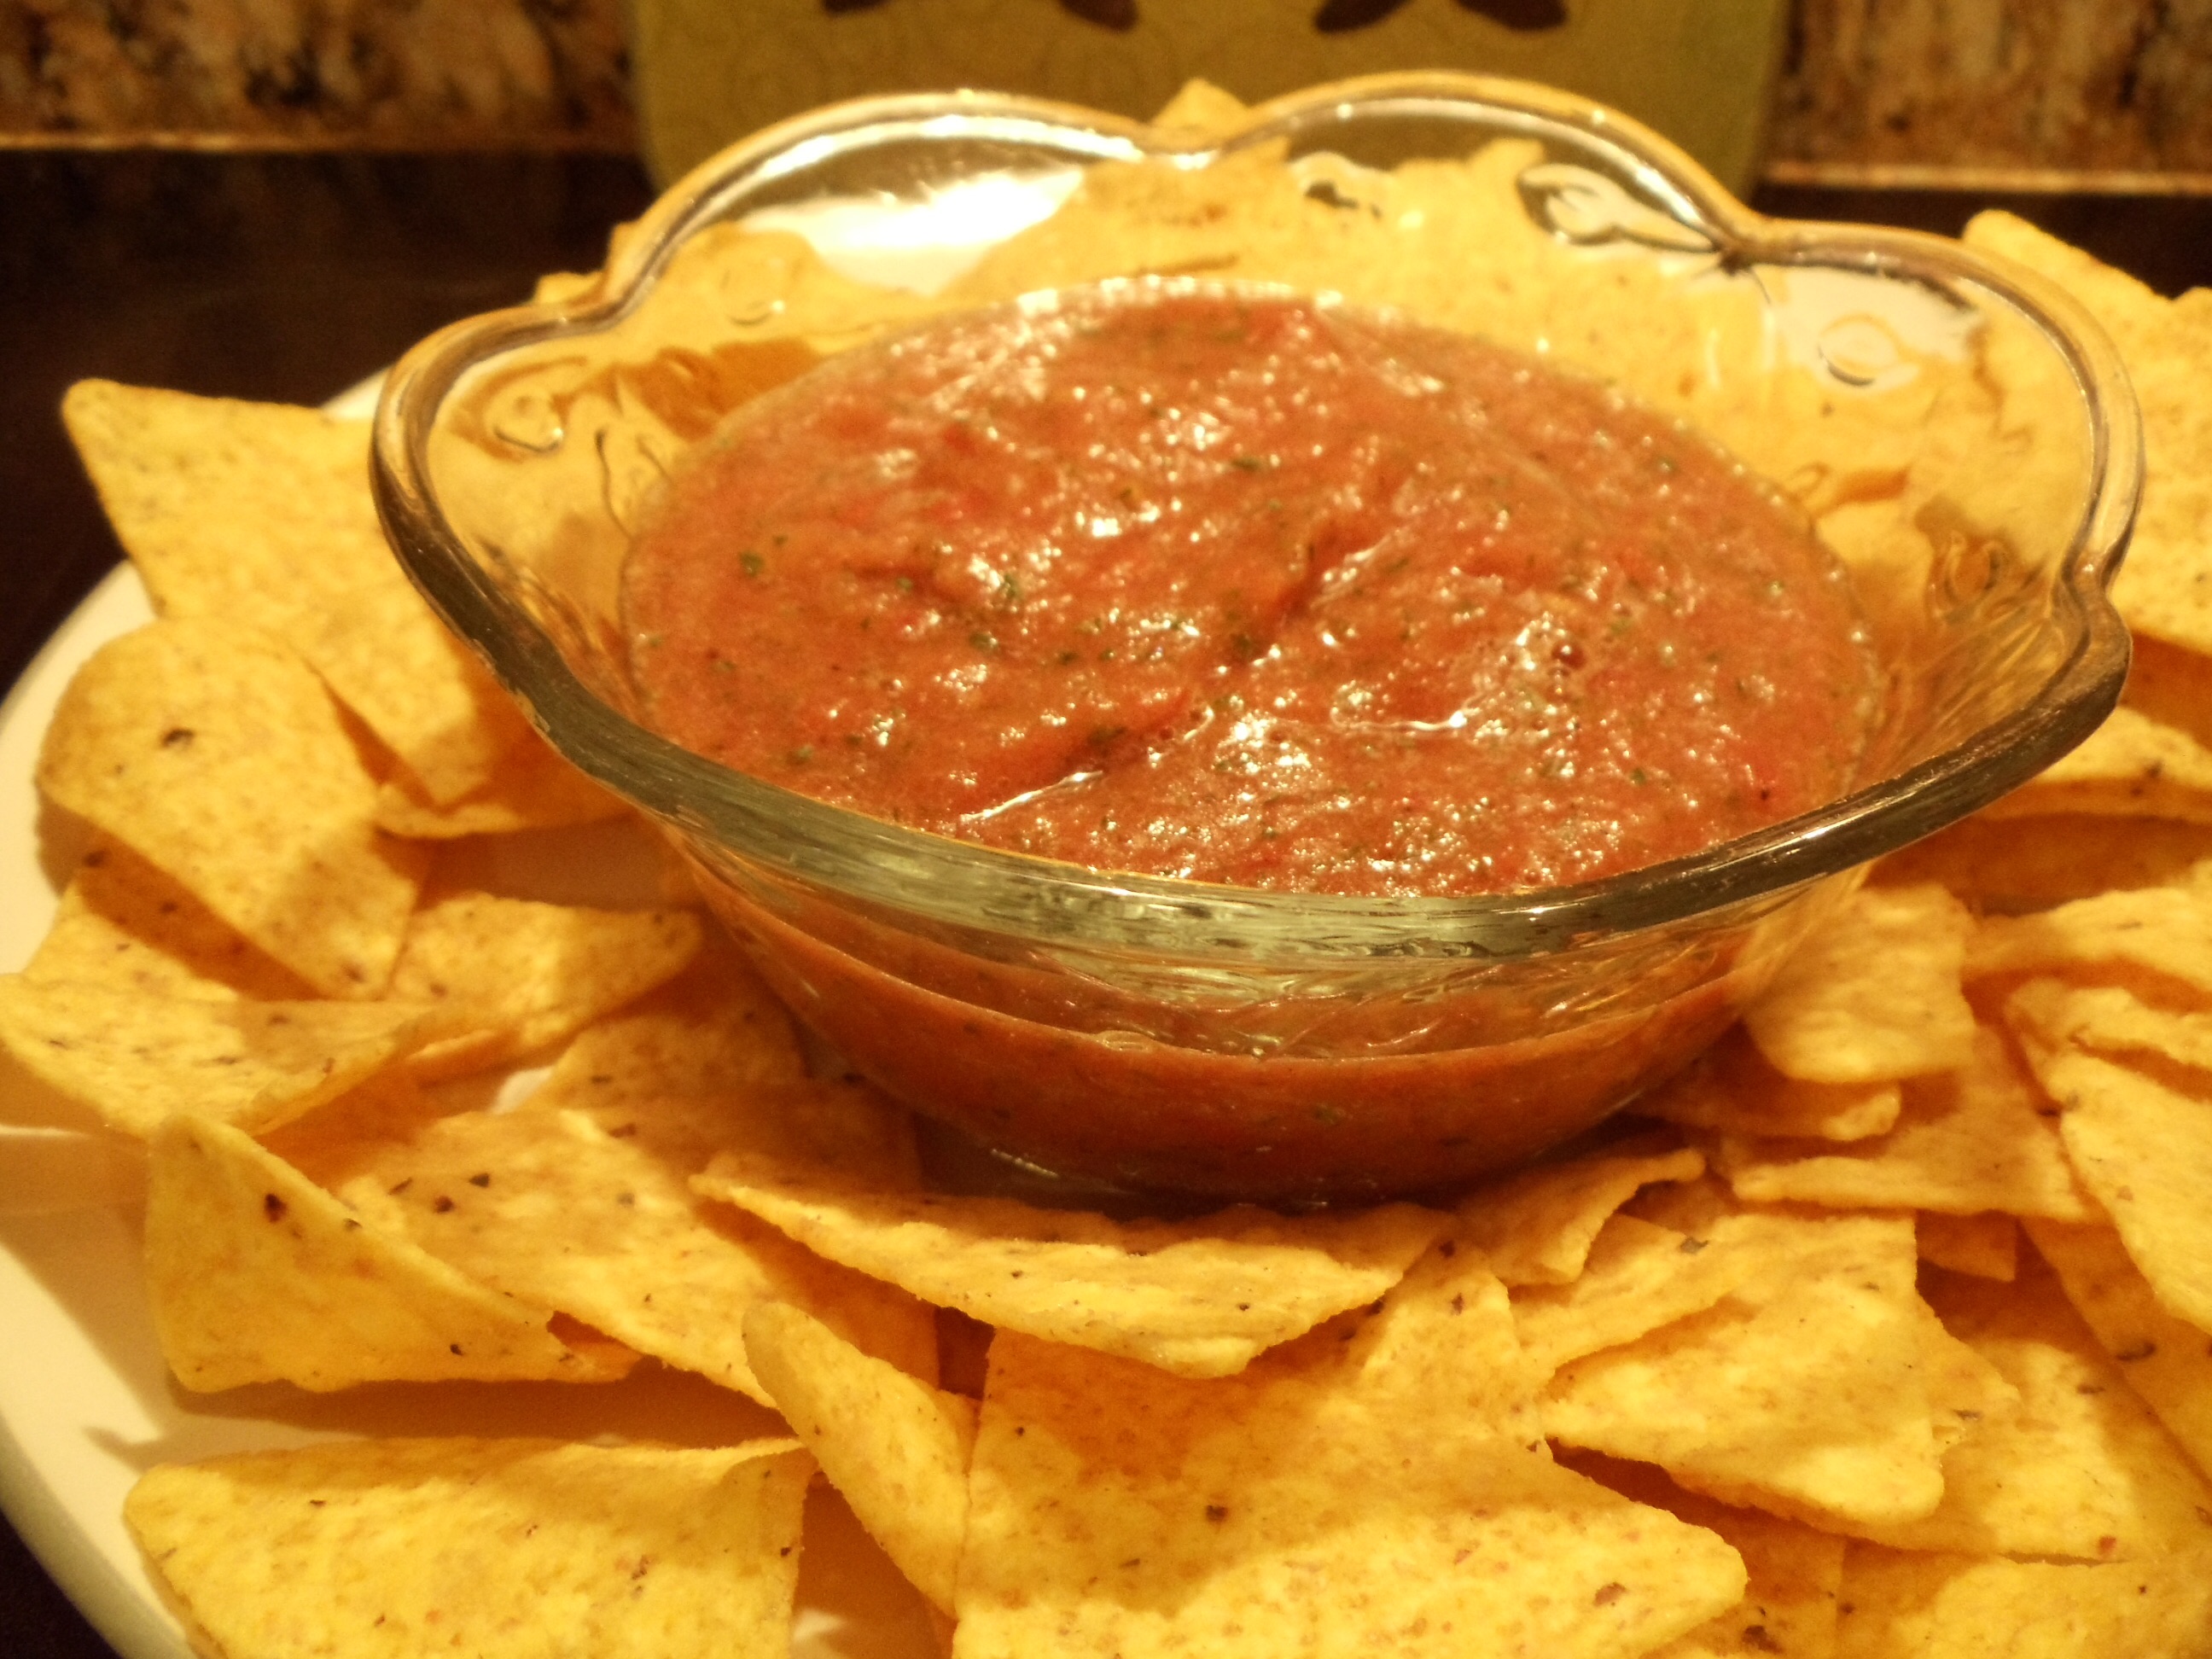 Home-made salsa